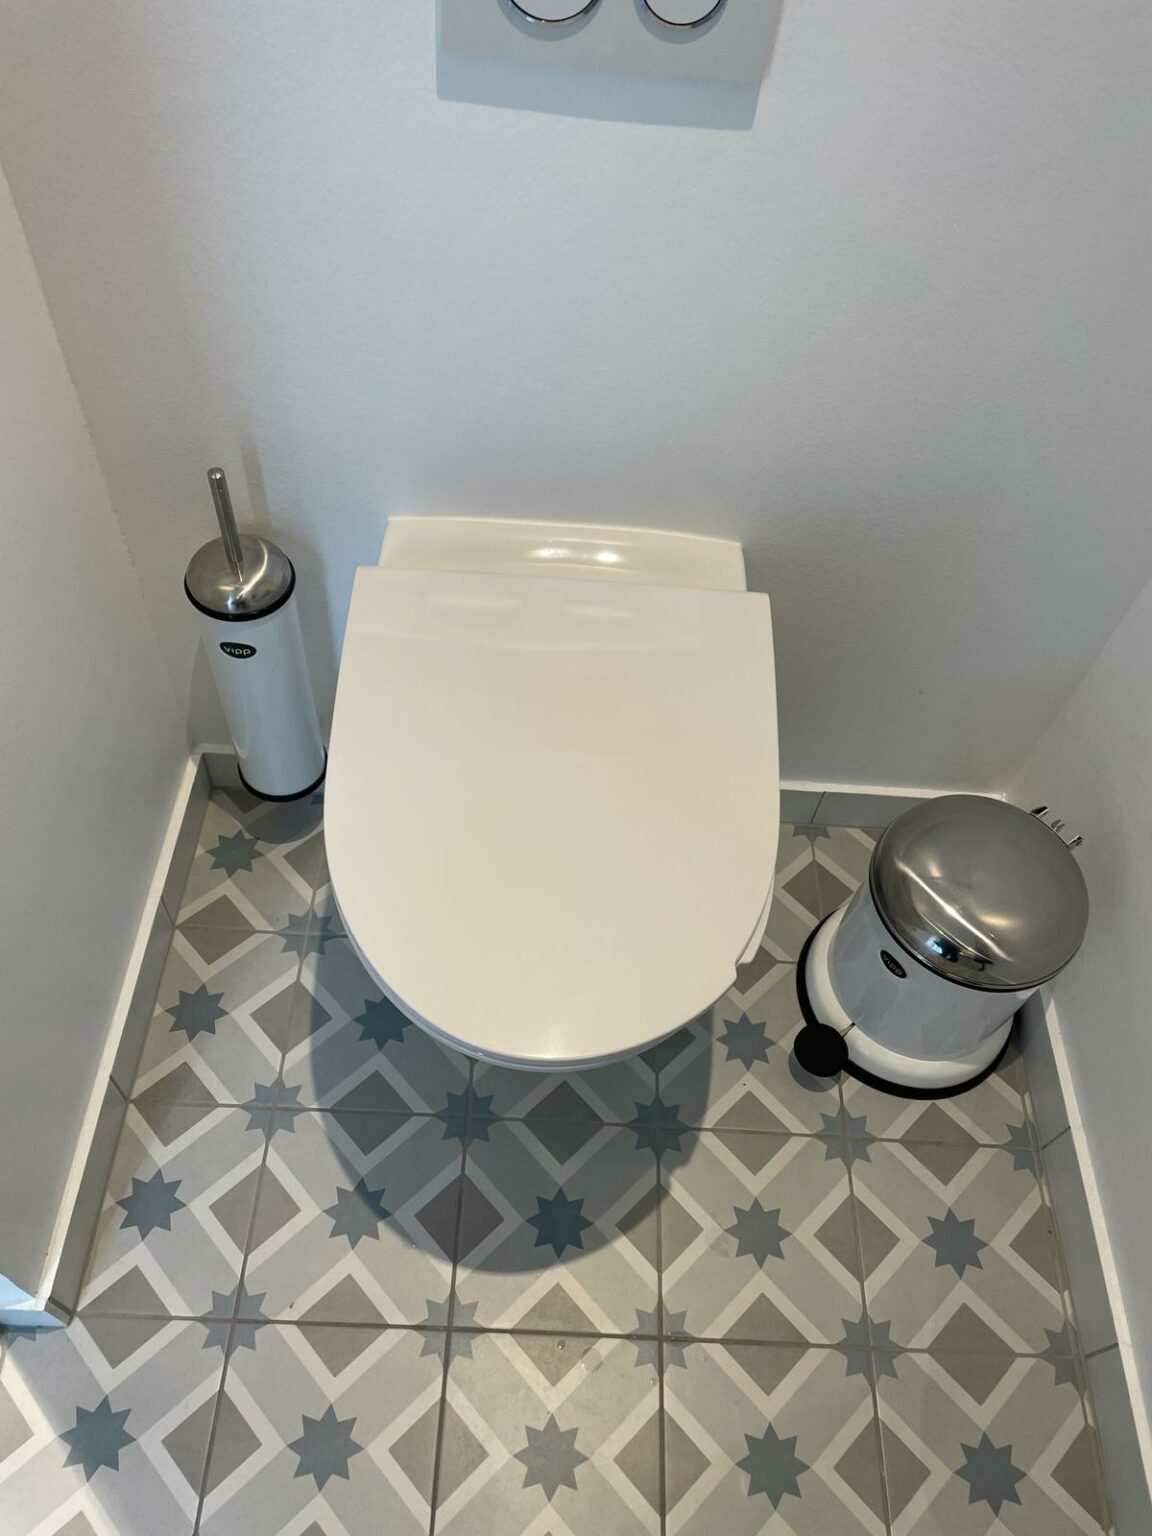 0.5. Udført fuld interiør design af toilet og fliser.